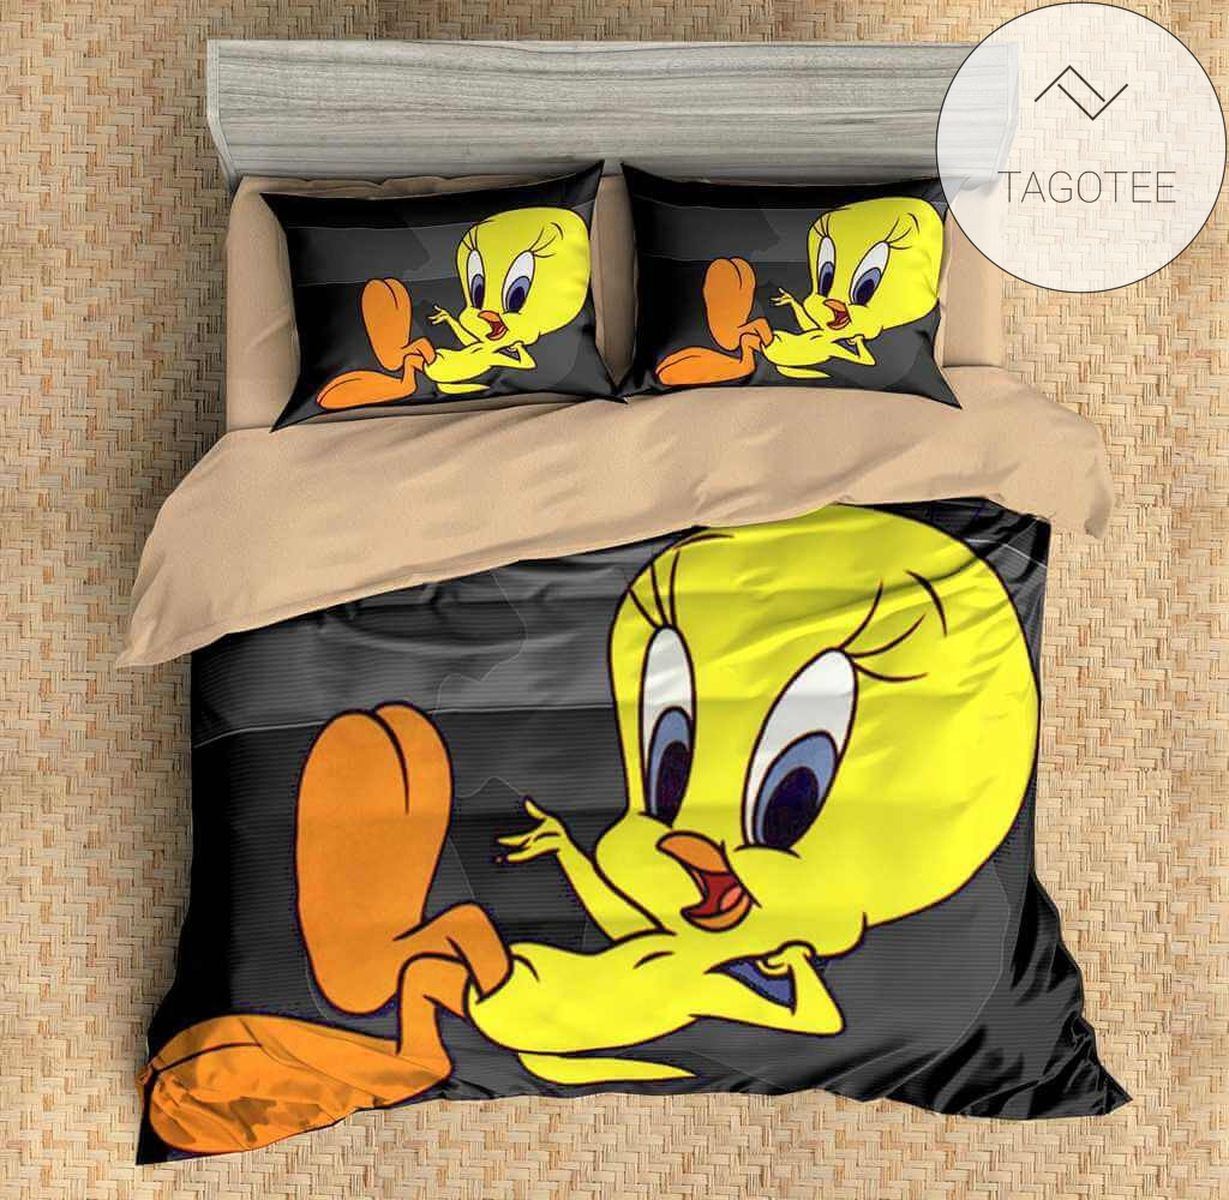 Customize Tweety Bird 3pcs Duvet Cover Set Bedding Set Flat Sheet Pillowcases Bedlinen 2022